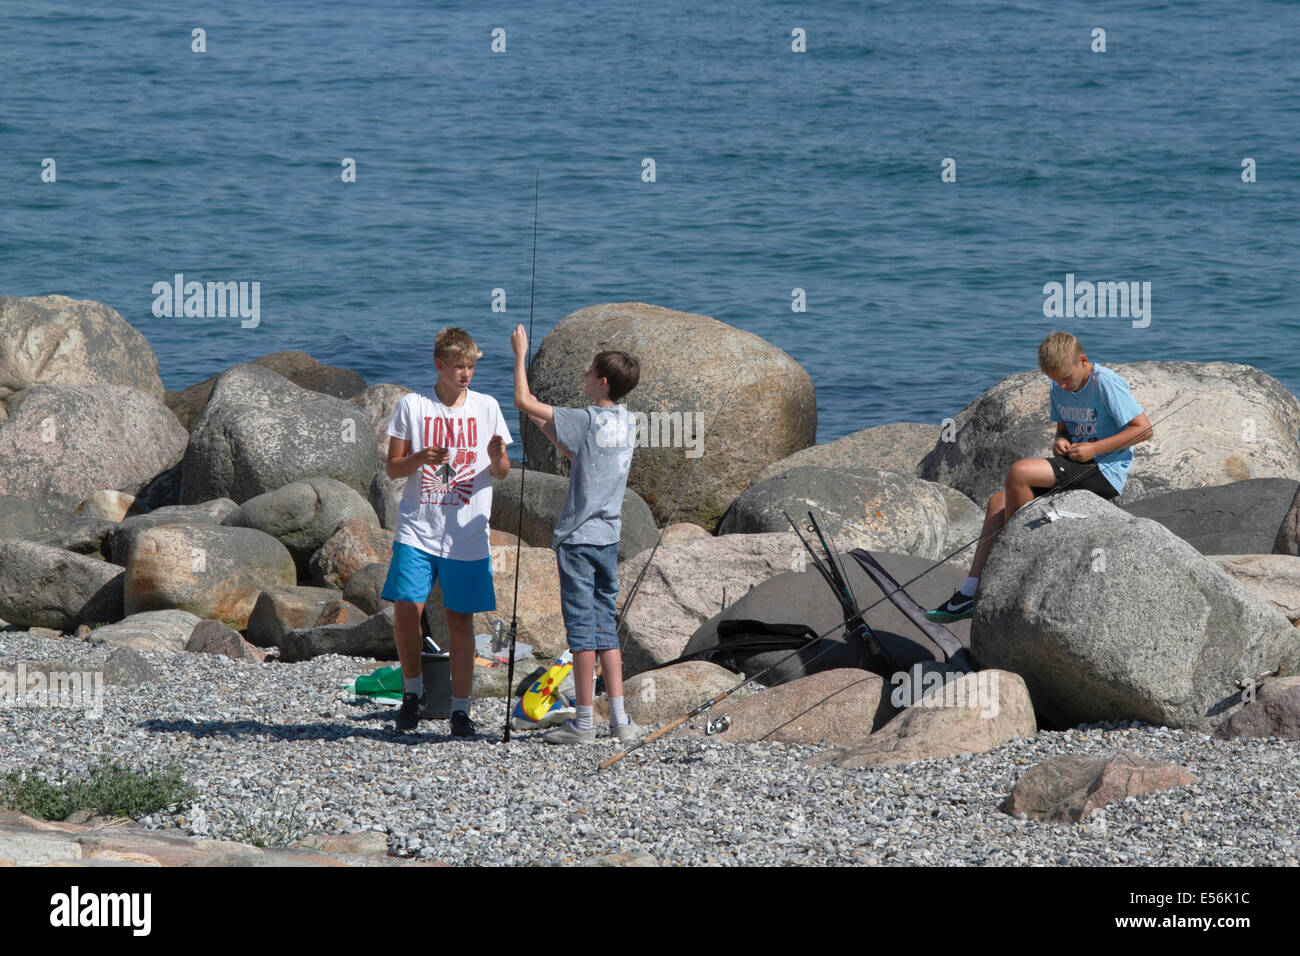 Adolescents jouissant de leurs vacances d'été à la pêche à la ligne, le son de l'Øresund, point de Kronborg à Helsingør / Elseneur. Banque D'Images